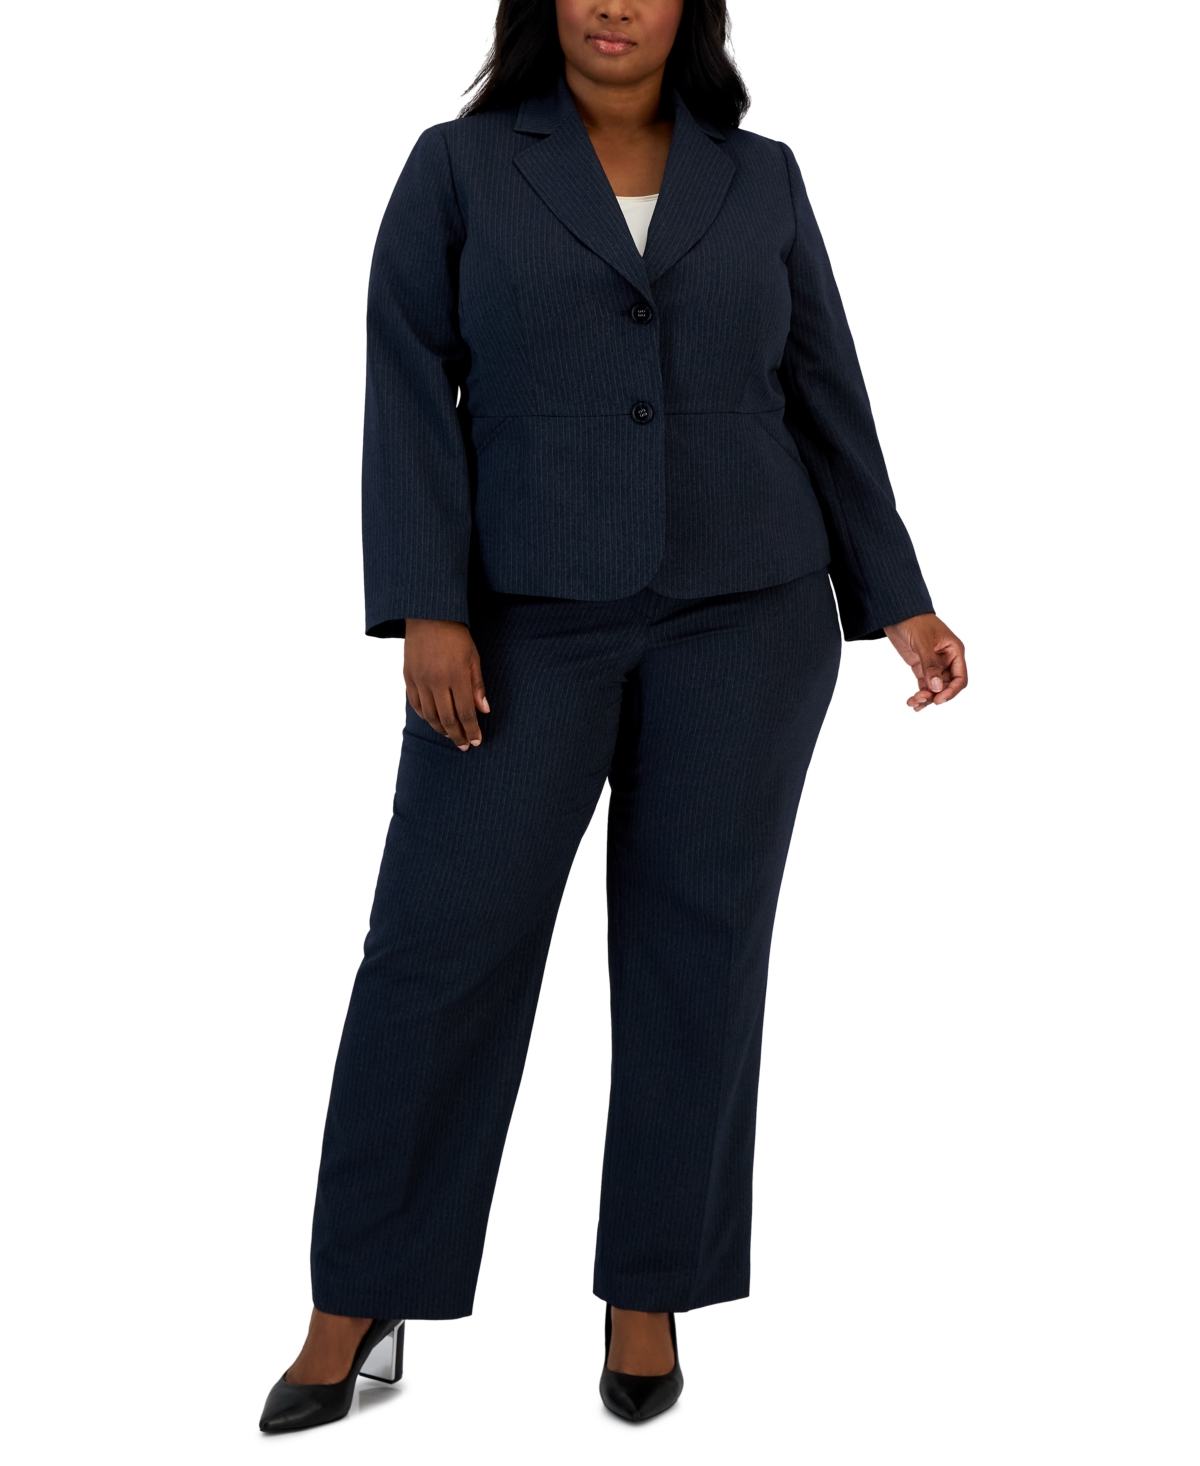 Le Suit Plus Size Two-Button Pinstriped Pantsuit